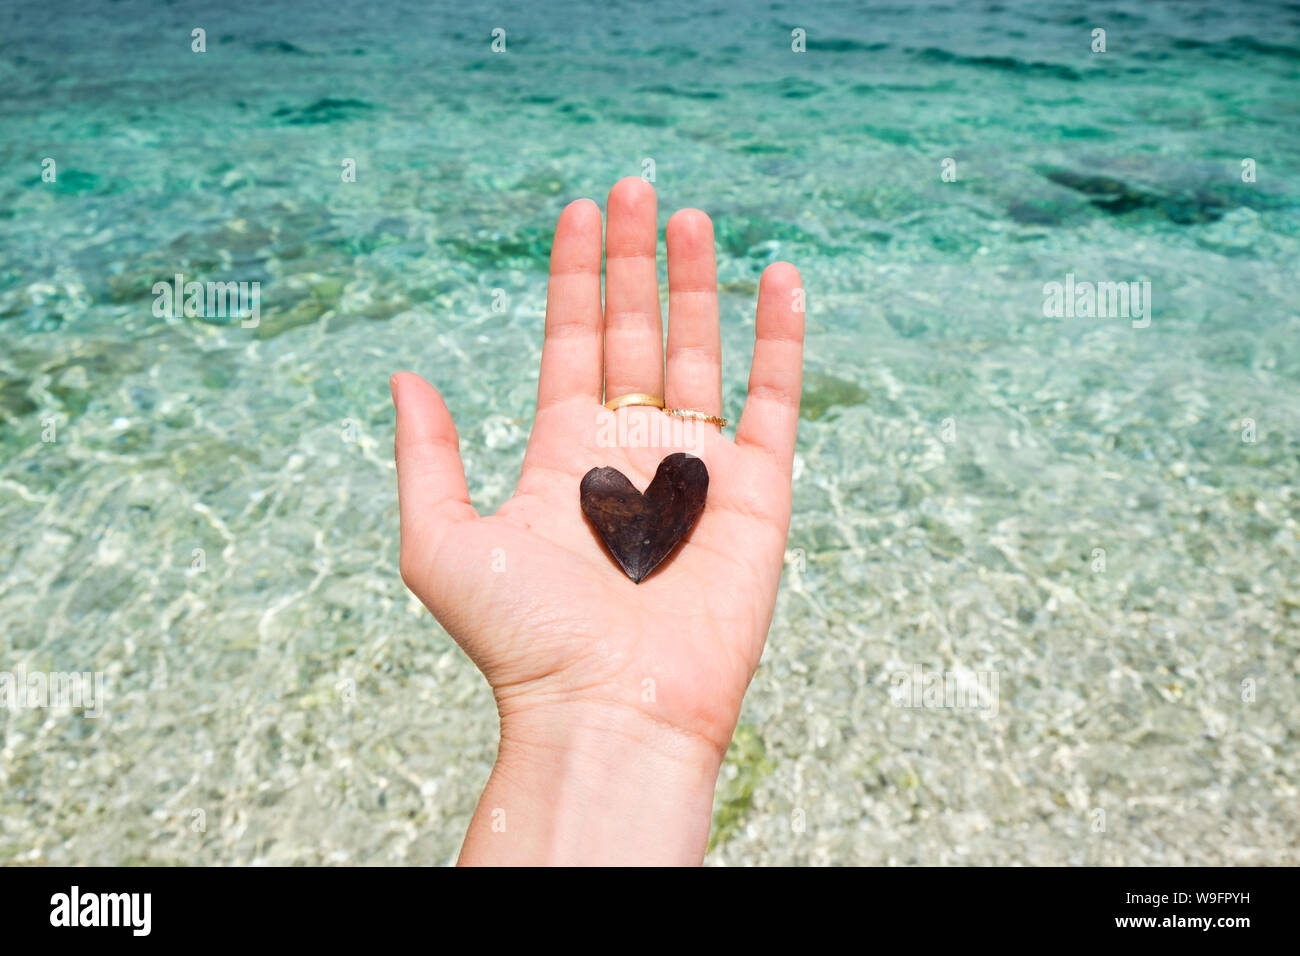 Eine Hand hält eine herzförmige Blätter vor dem türkisblauen Wasser des Ionischen Meeres in Kefalonia, Griechenland. Stockfoto